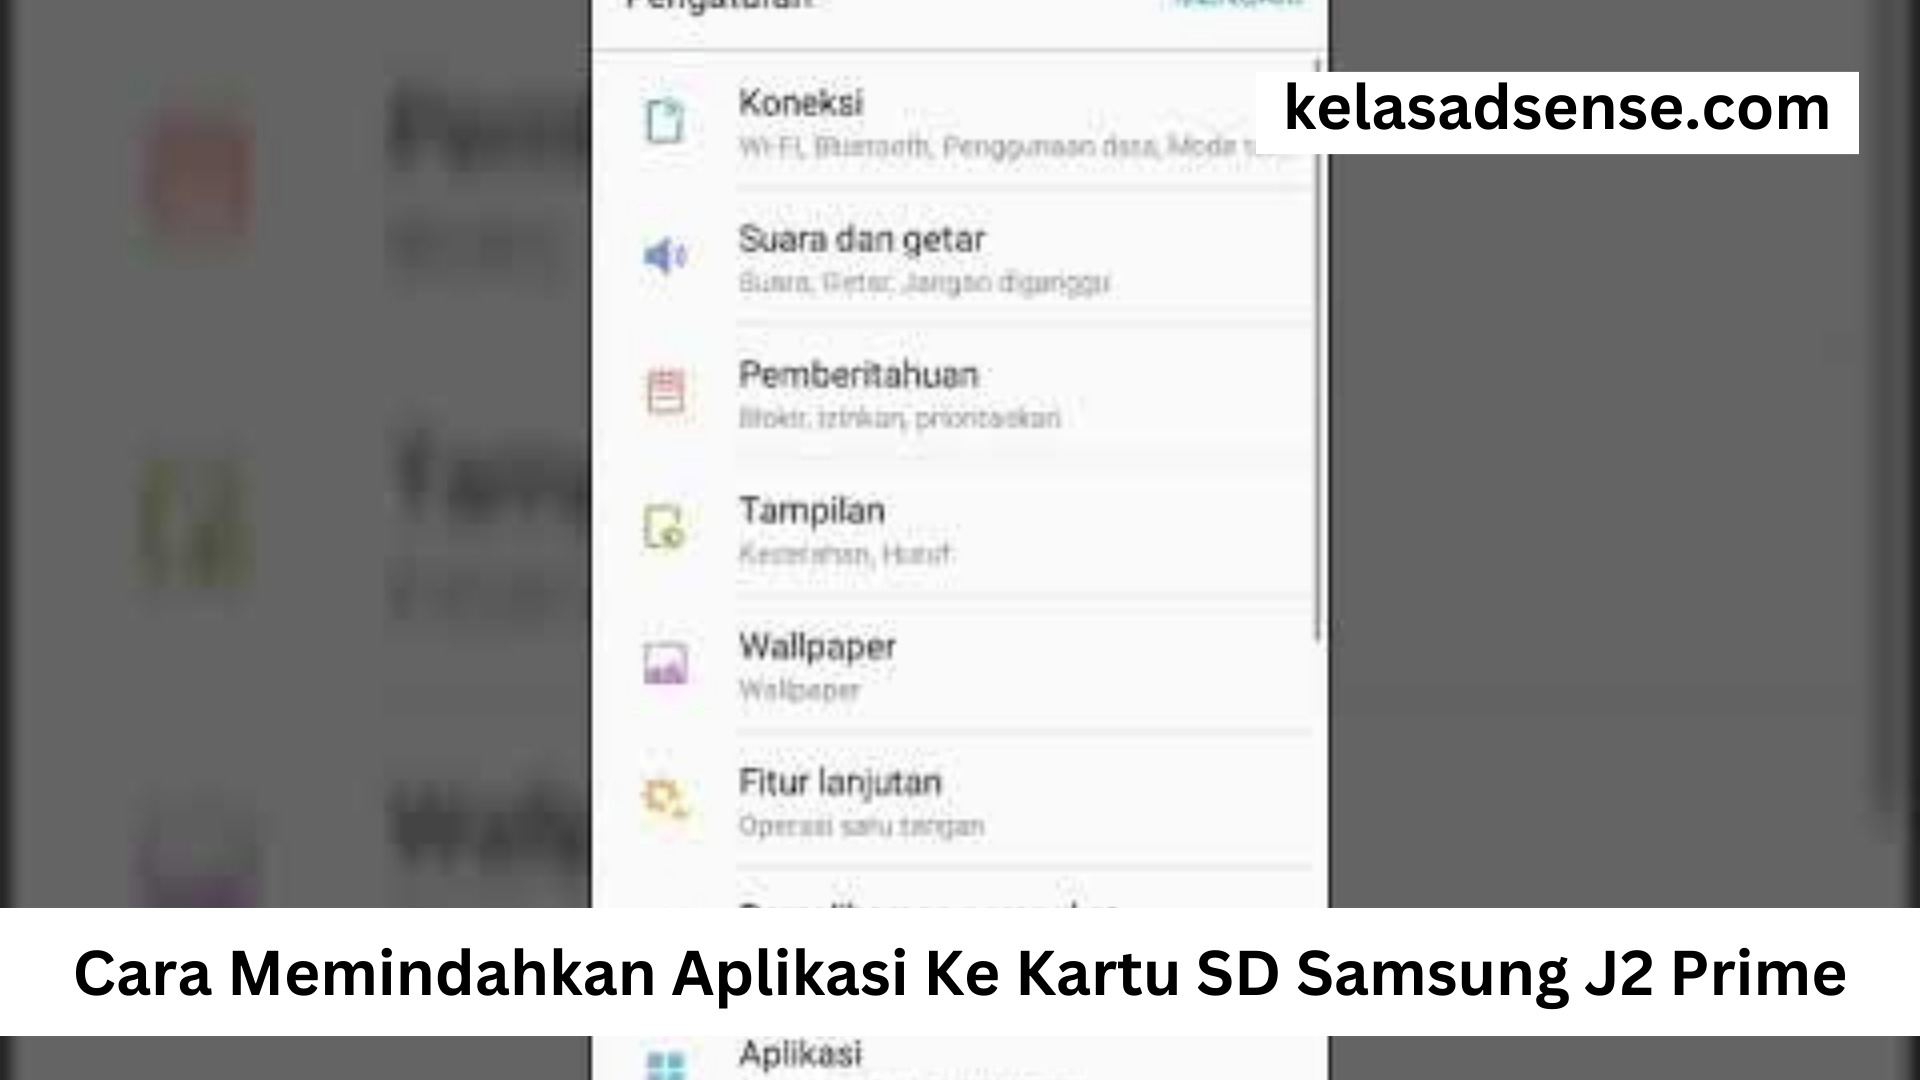 Cara Memindahkan Aplikasi Ke Kartu SD Samsung J2 Prime